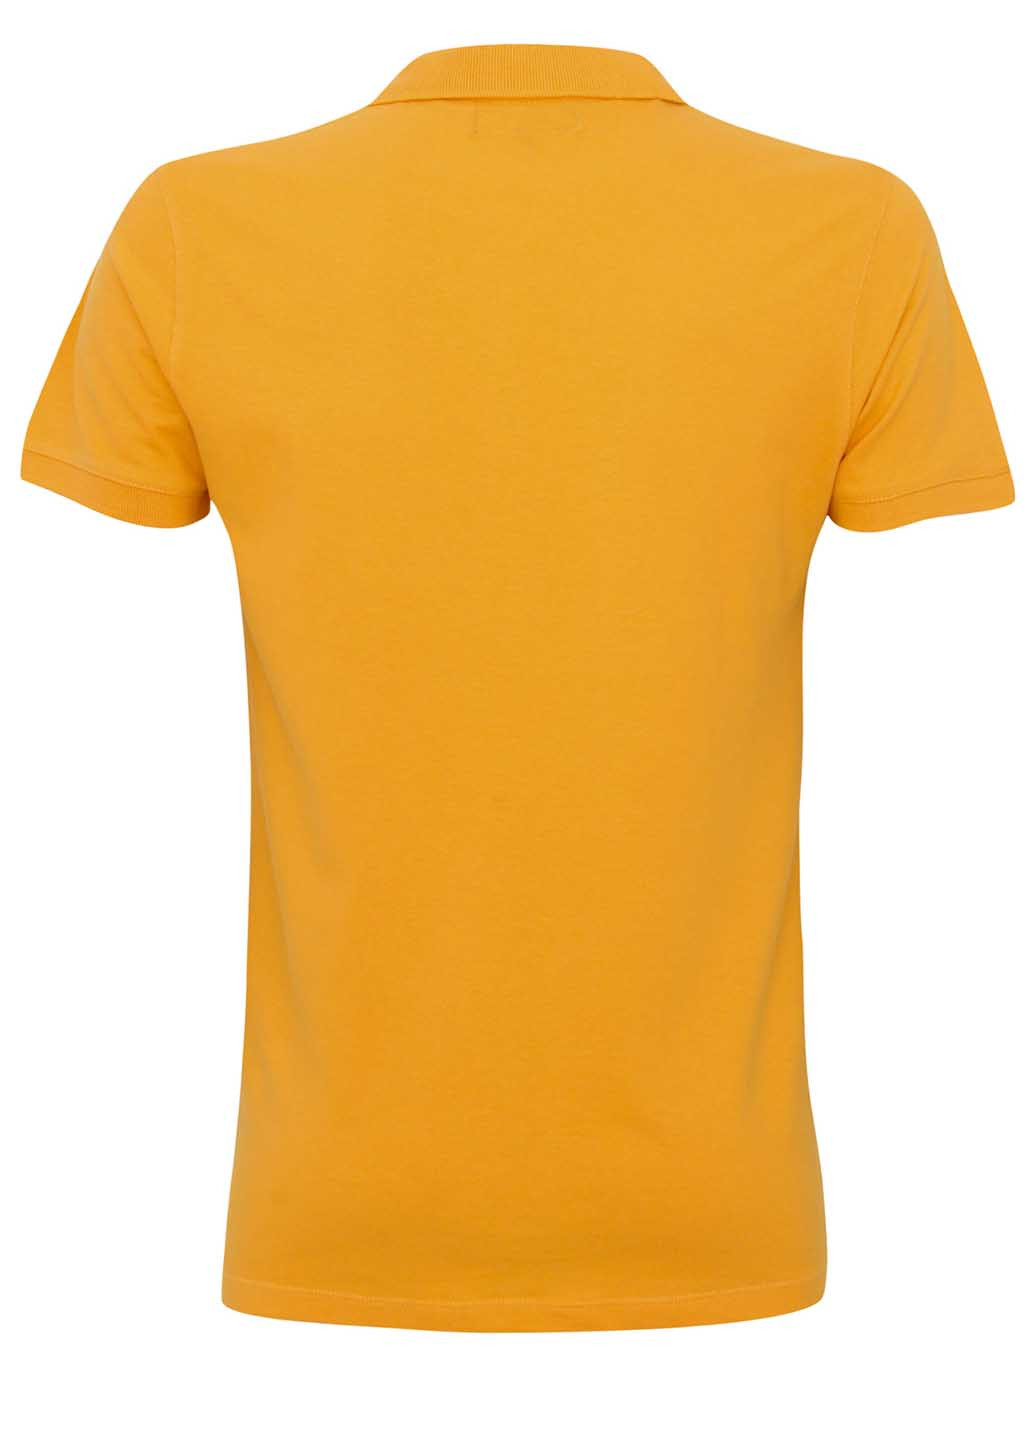 Оранжевая футболка-поло для мужчин Oodji однотонная